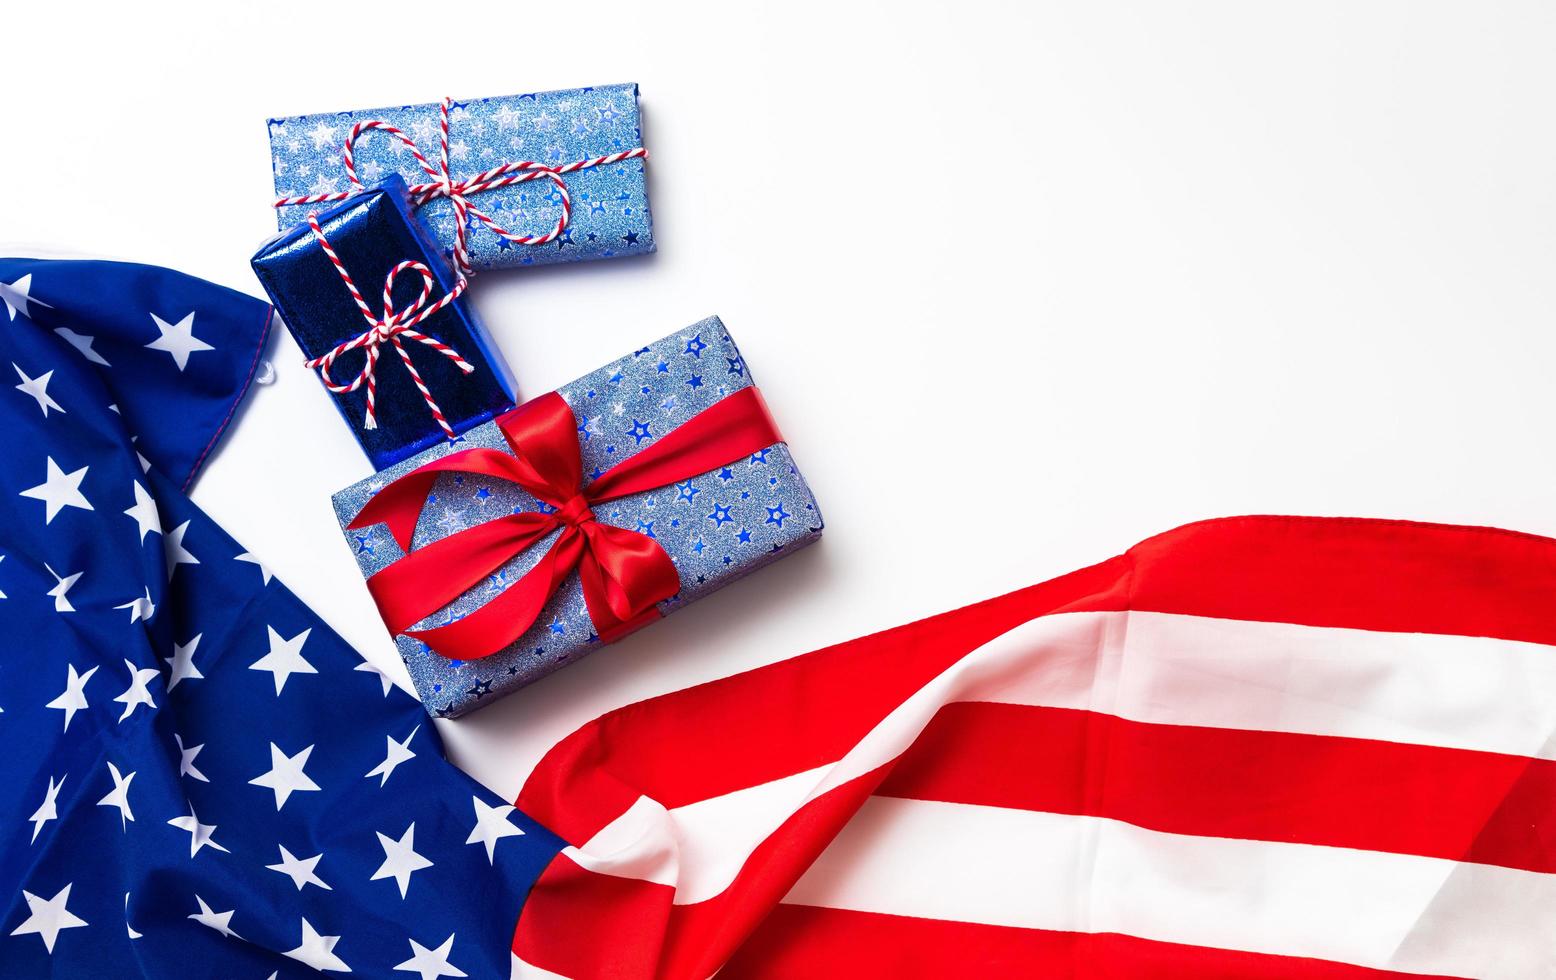 glückliches veteranentageskonzept. amerikanische Flaggen mit Geschenkbox vor einem Tafelhintergrund. 11. November. foto